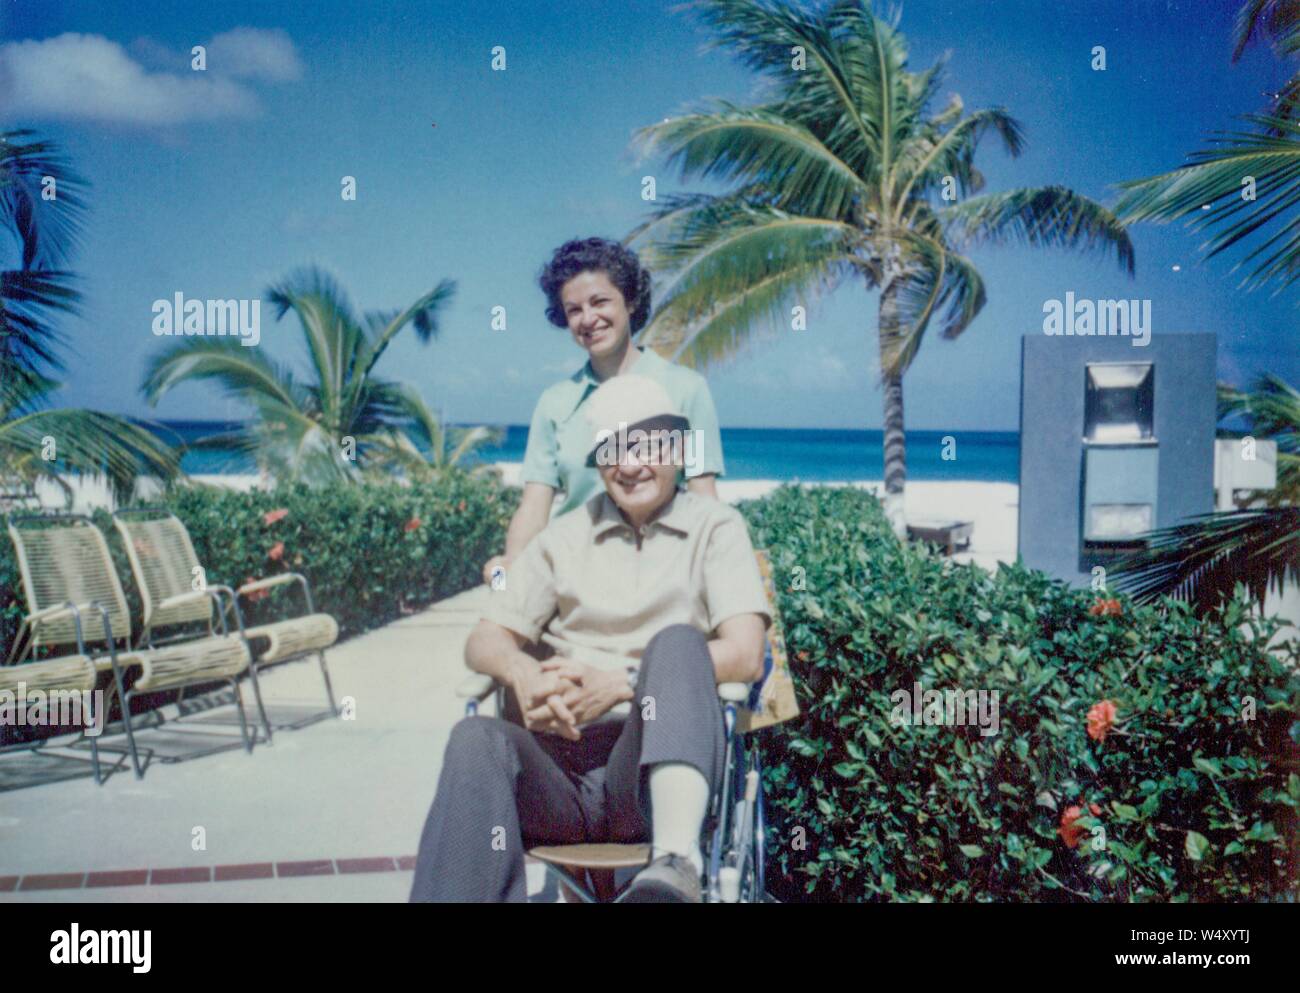 Reifen amerikanischen Touristen Paar in einer Lage am Strand in der Karibik, mit Mann im Rollstuhl sitzt, Brille und Hut, während seine Frau hinter ihm steht das Tragen von Lime Green Kleid, beide lächeln, 1970. () Stockfoto